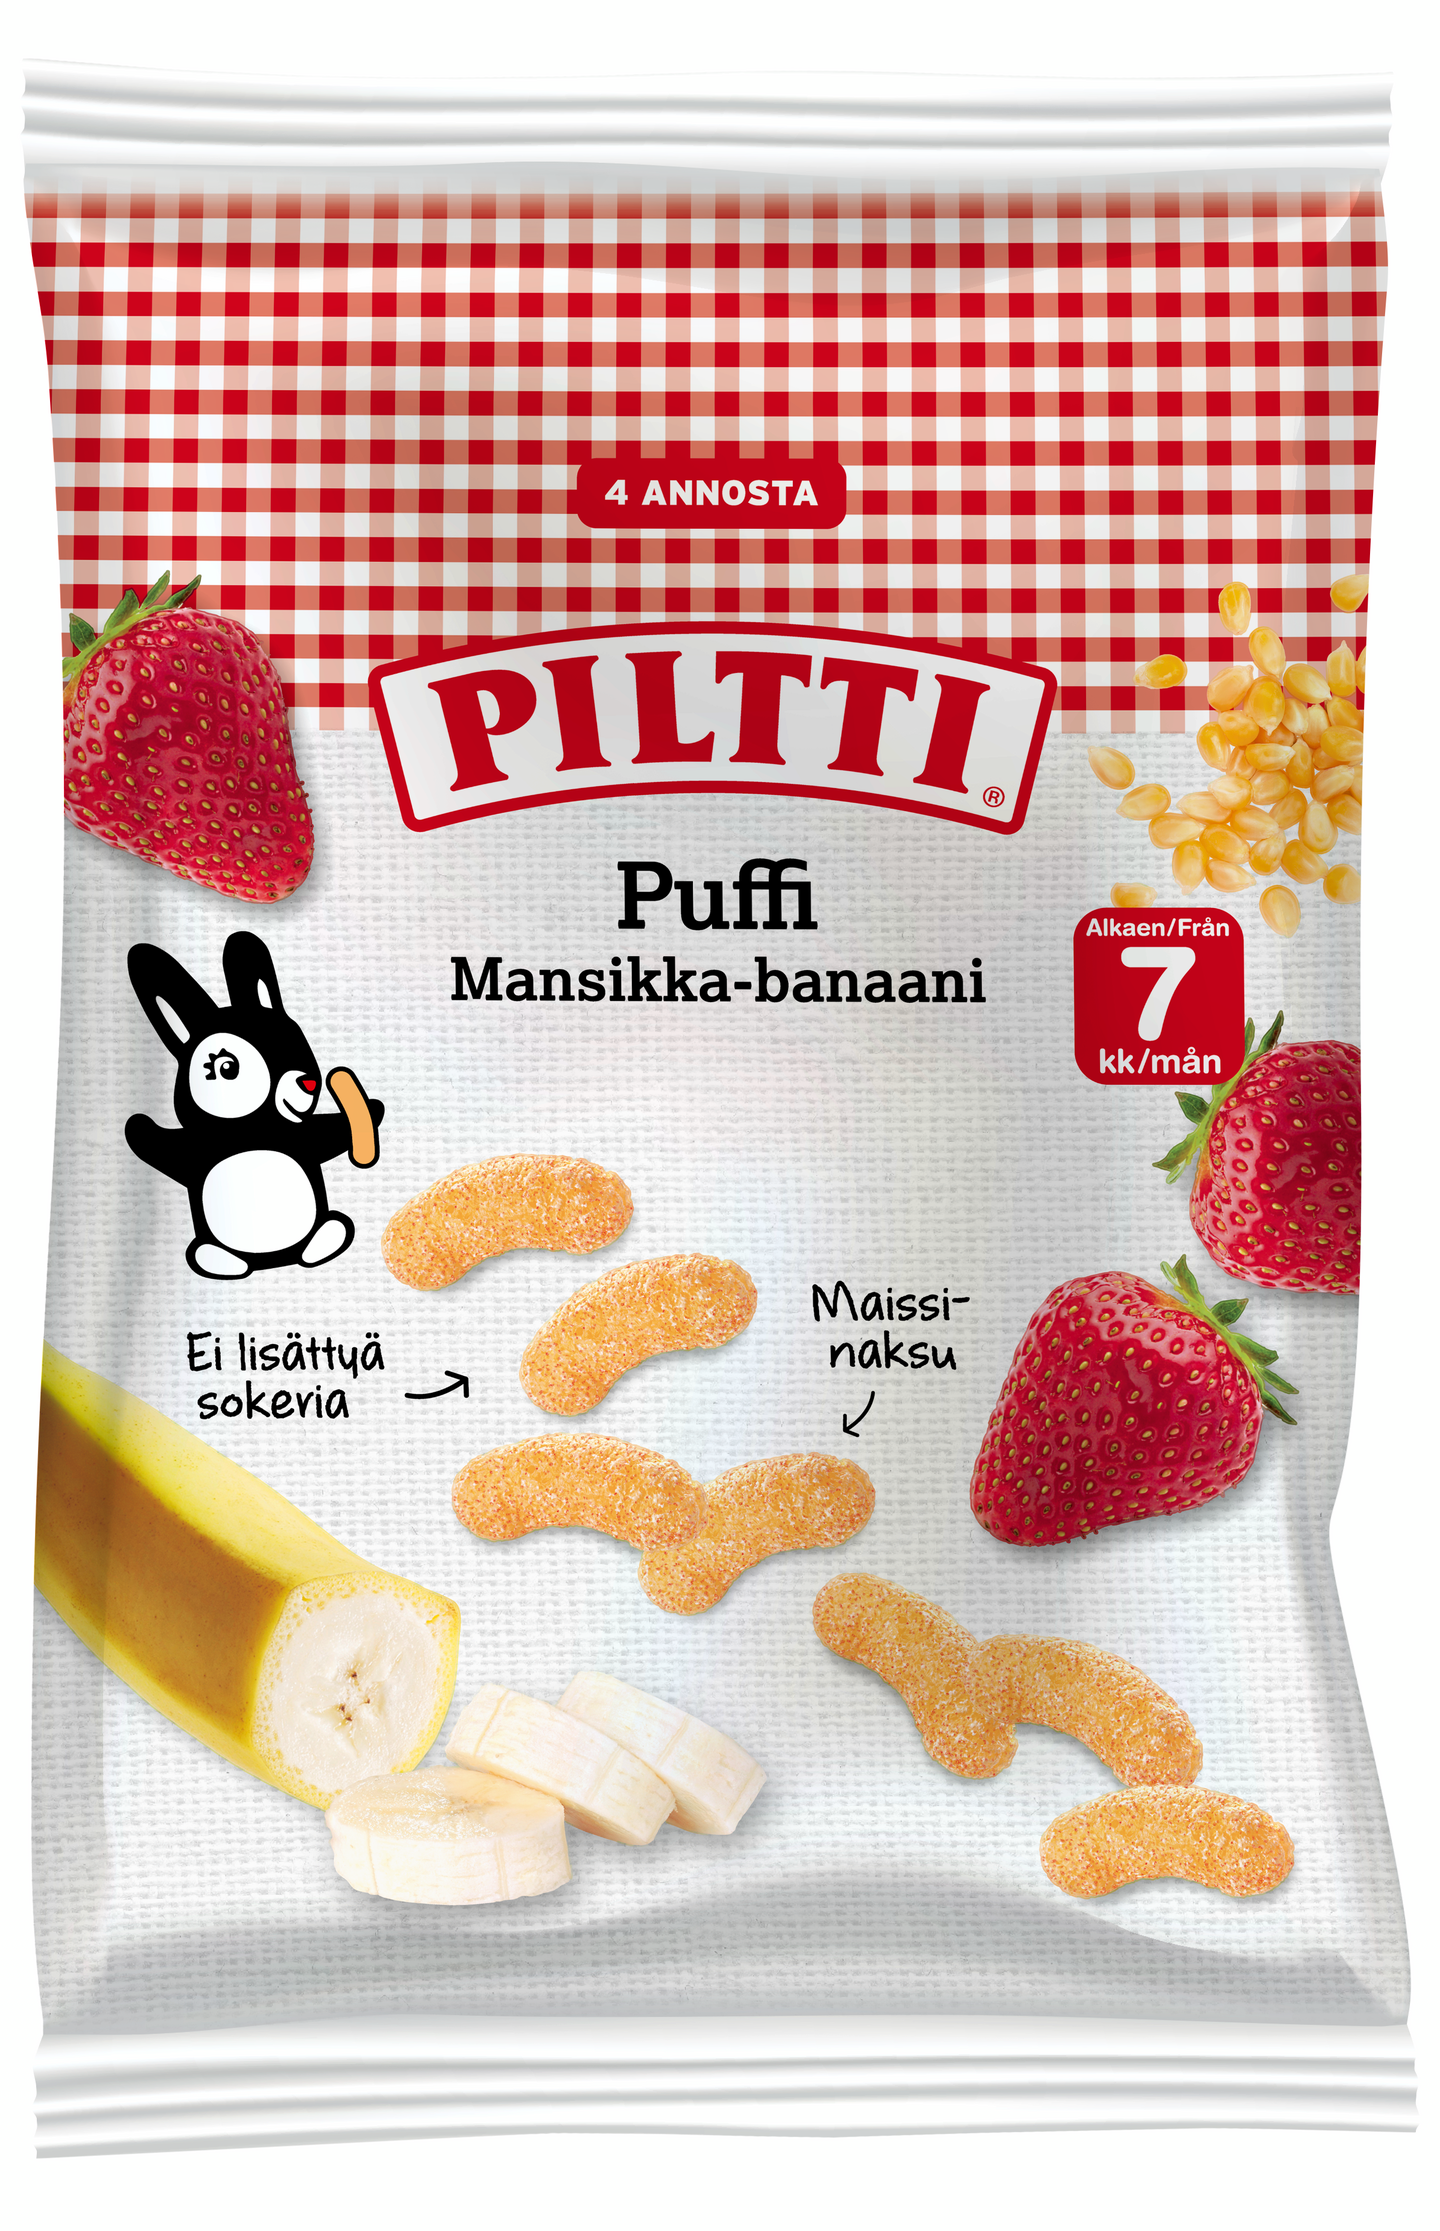 Piltti Puffi Mansikan ja Banaanin makuisia maissinaksuja 7kk 28g